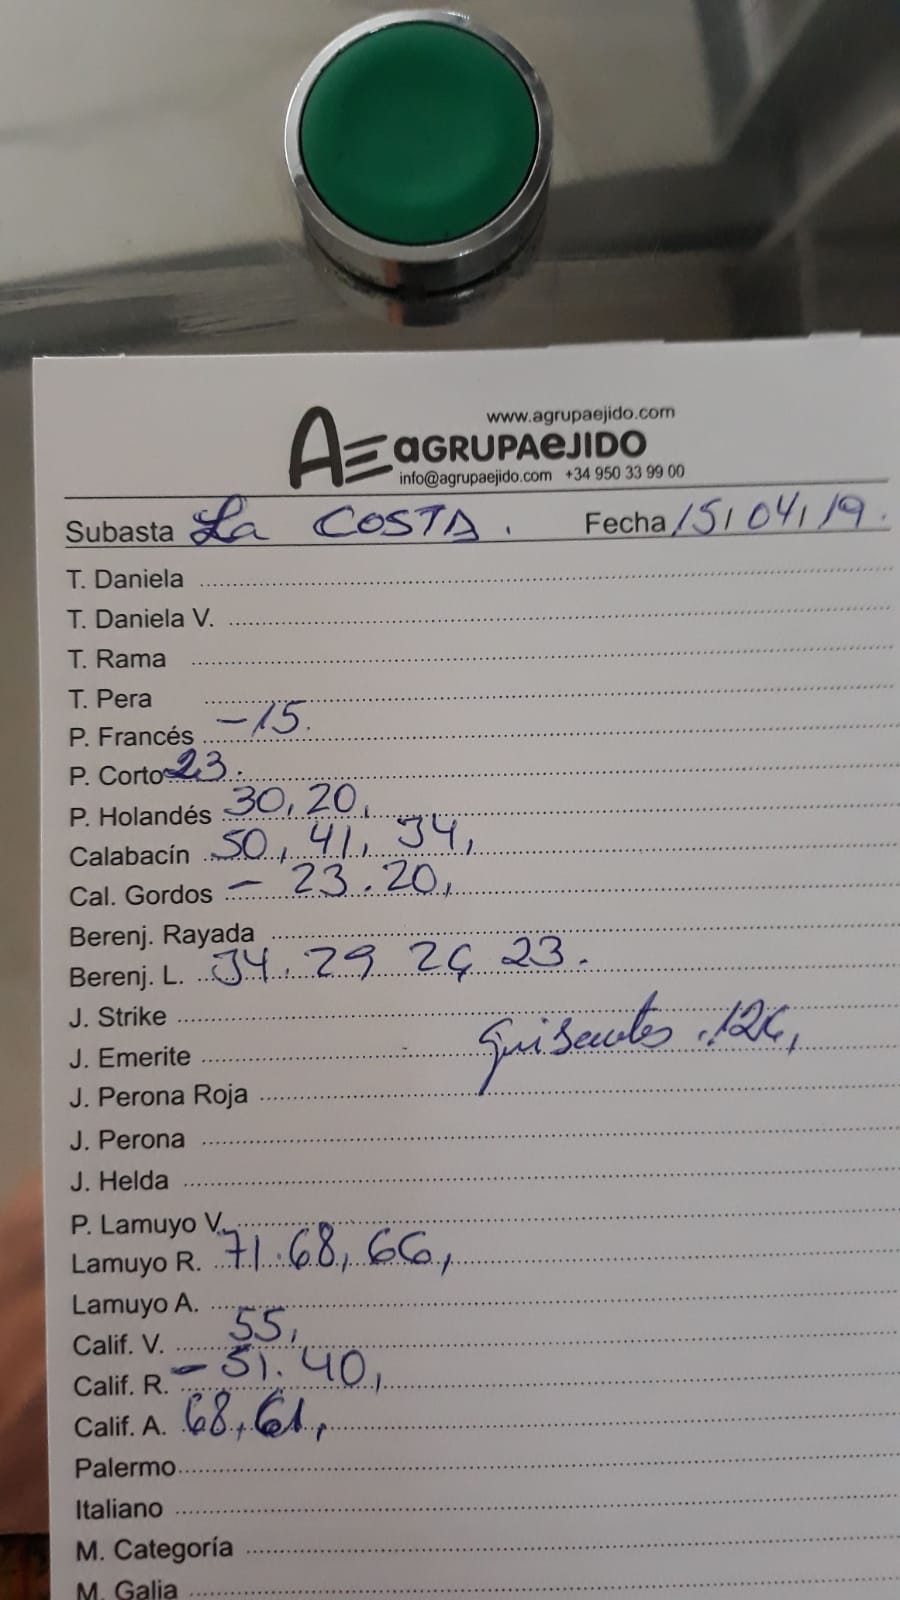 Subasta hortofrutícola AgrupaEjido La Costa 15 de Abril 2019